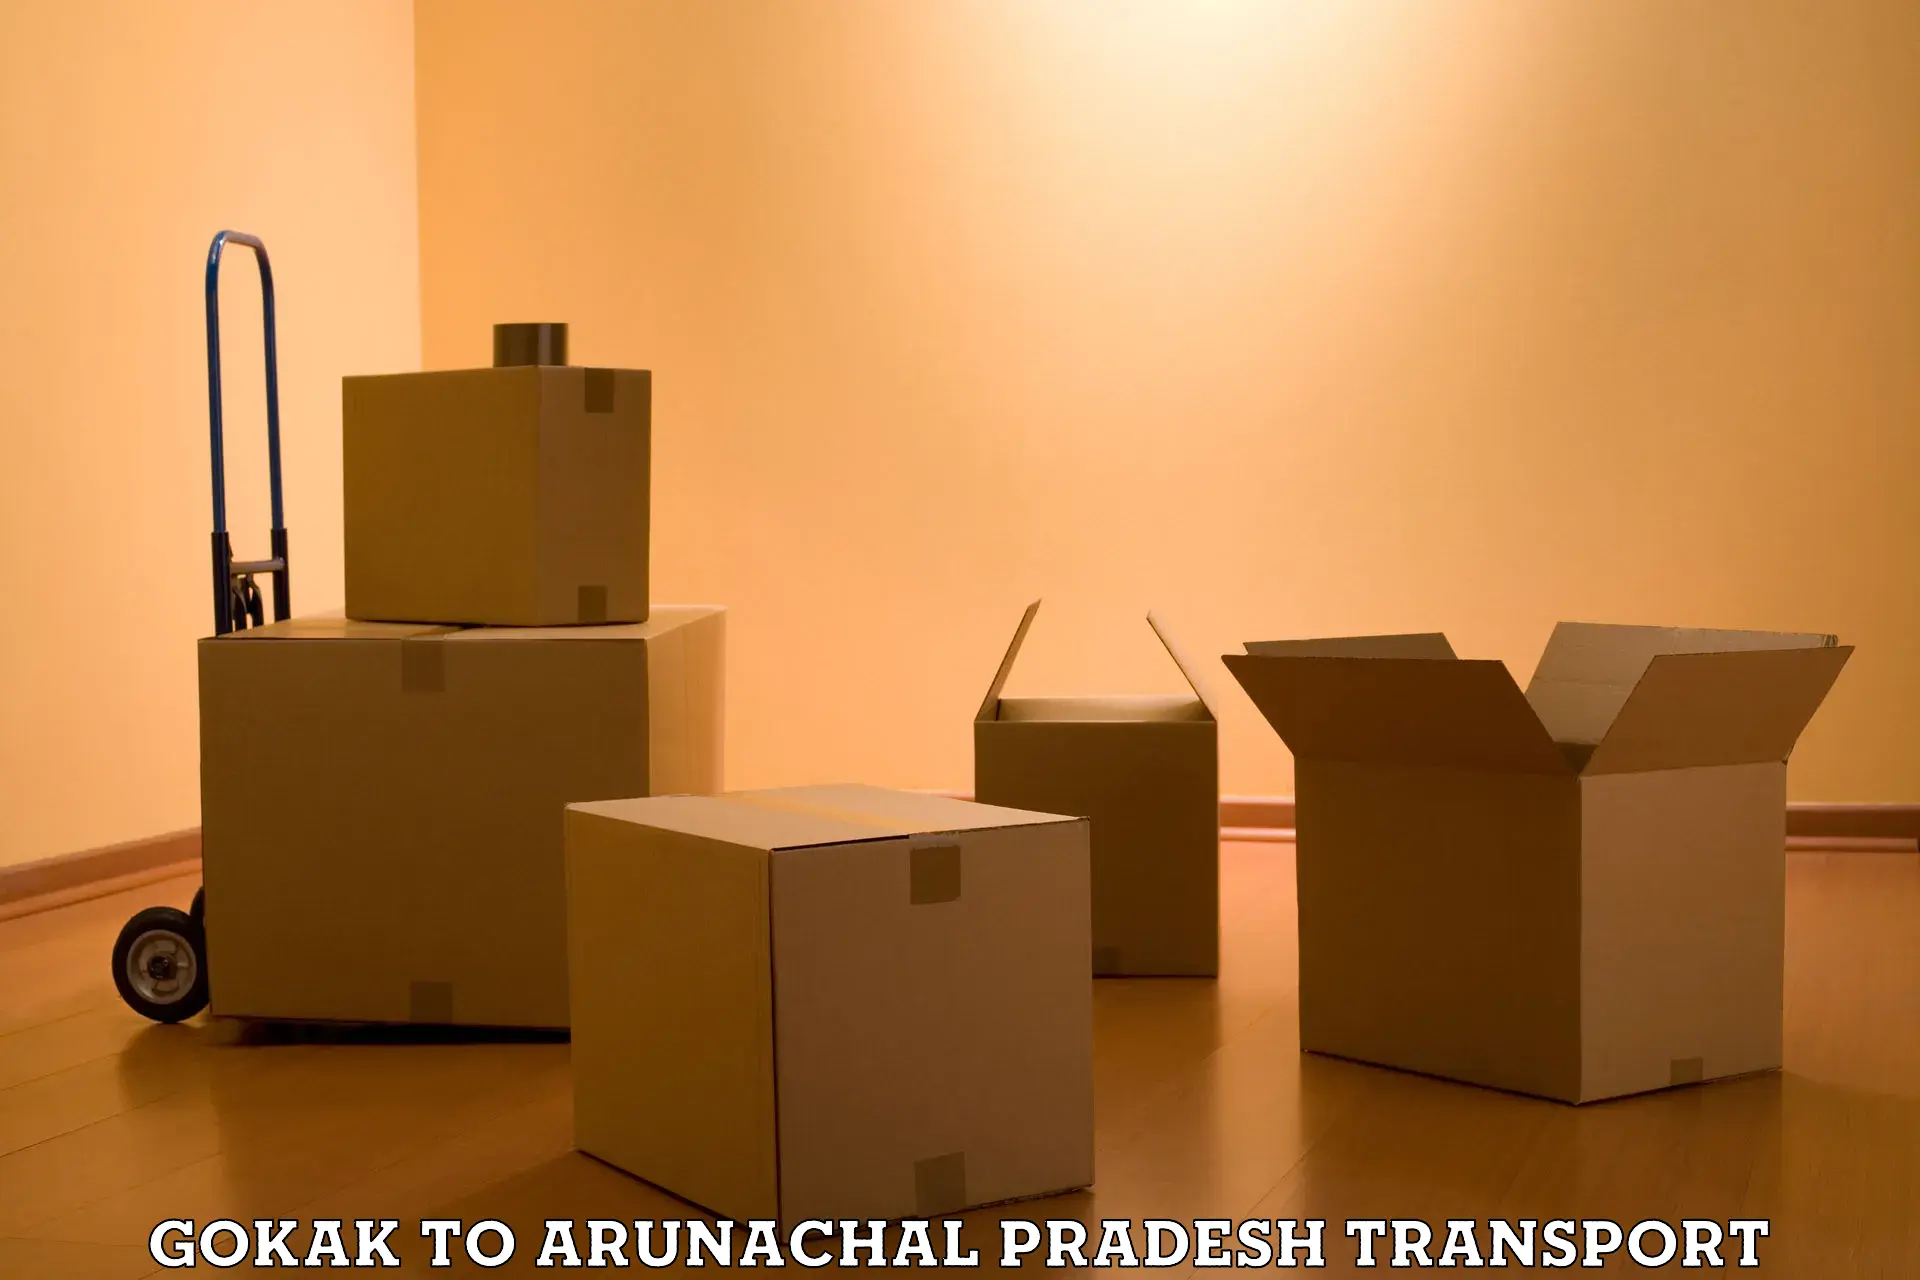 Delivery service Gokak to Arunachal Pradesh